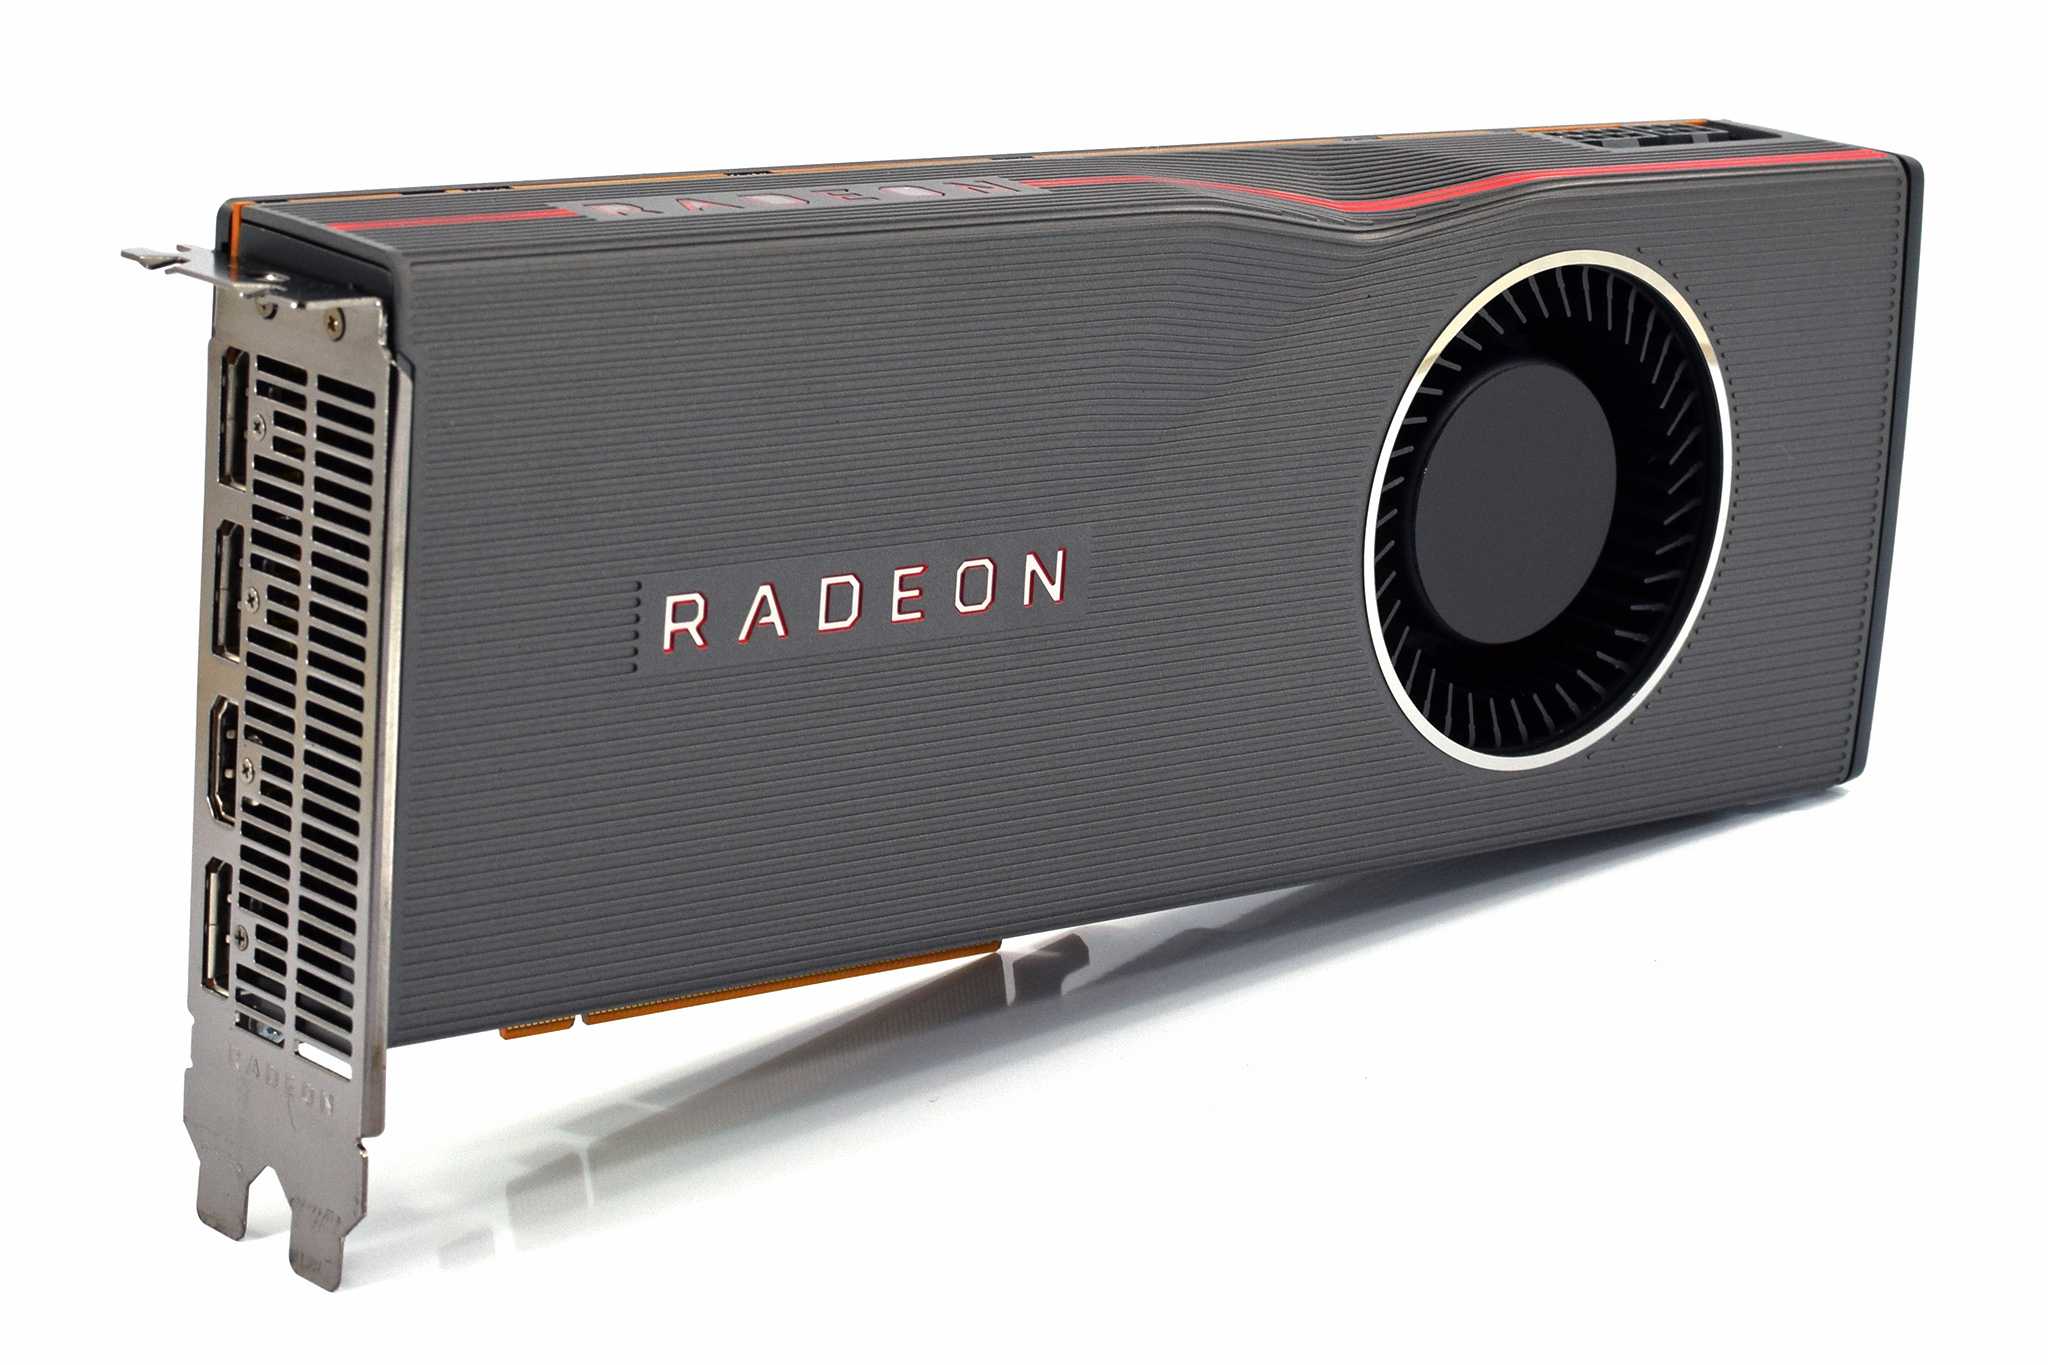 Ati radeon rx. RX 5700 XT. Radeon RX 5700 XT. Видеокарта AMD rx5700. AMD RX 5700 XT 8gb.